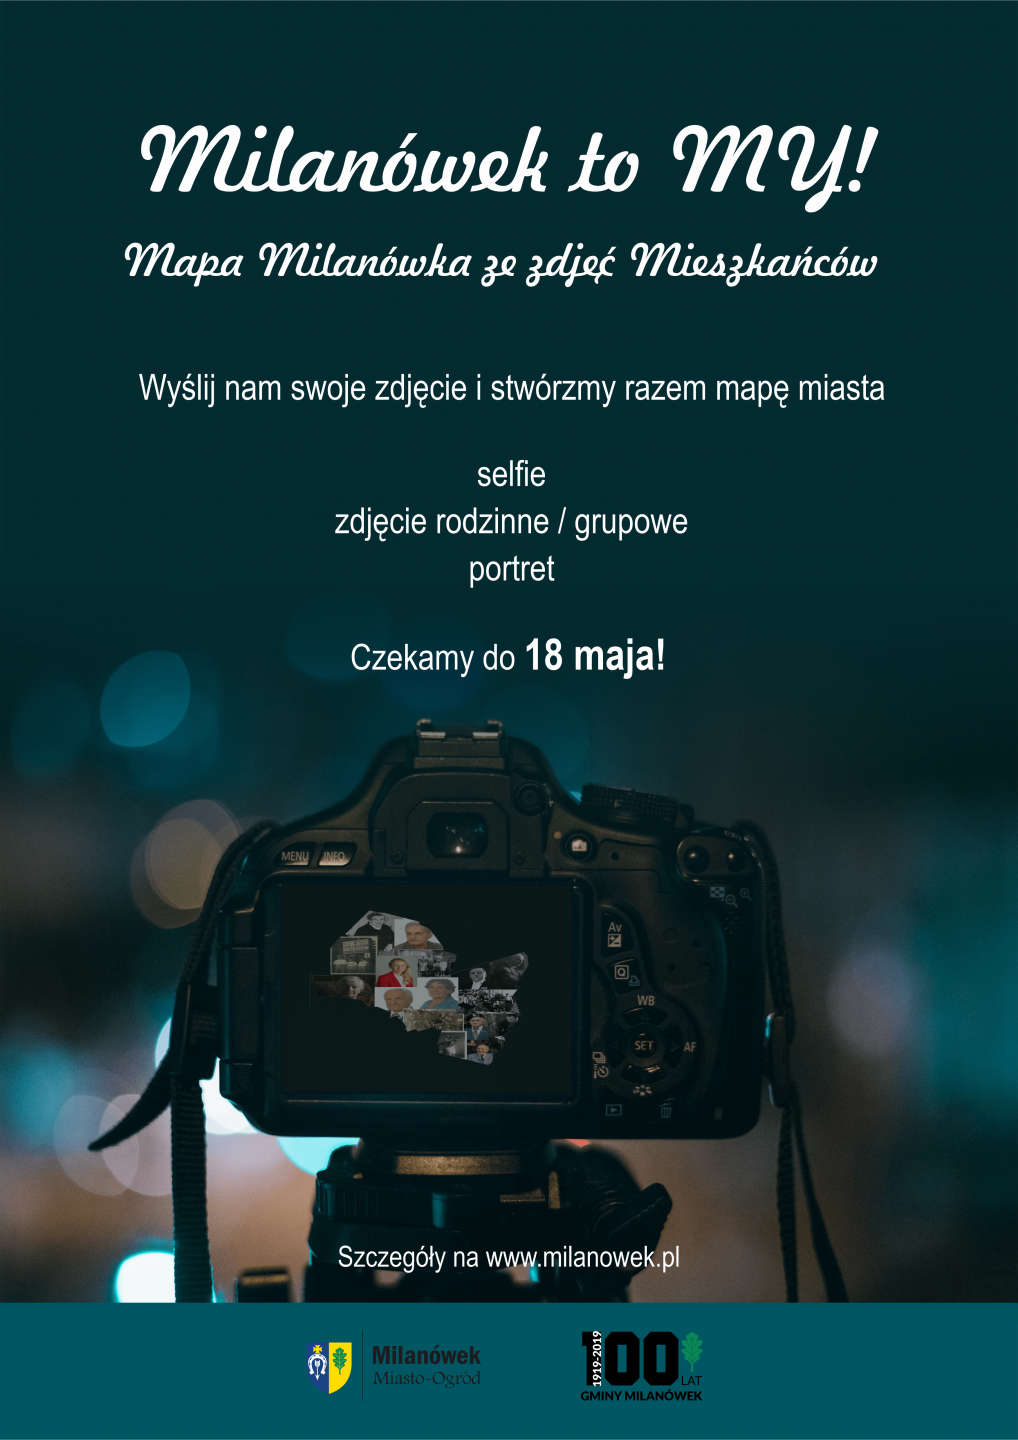 Plakat promujący akcję "Milanówek to MY!"